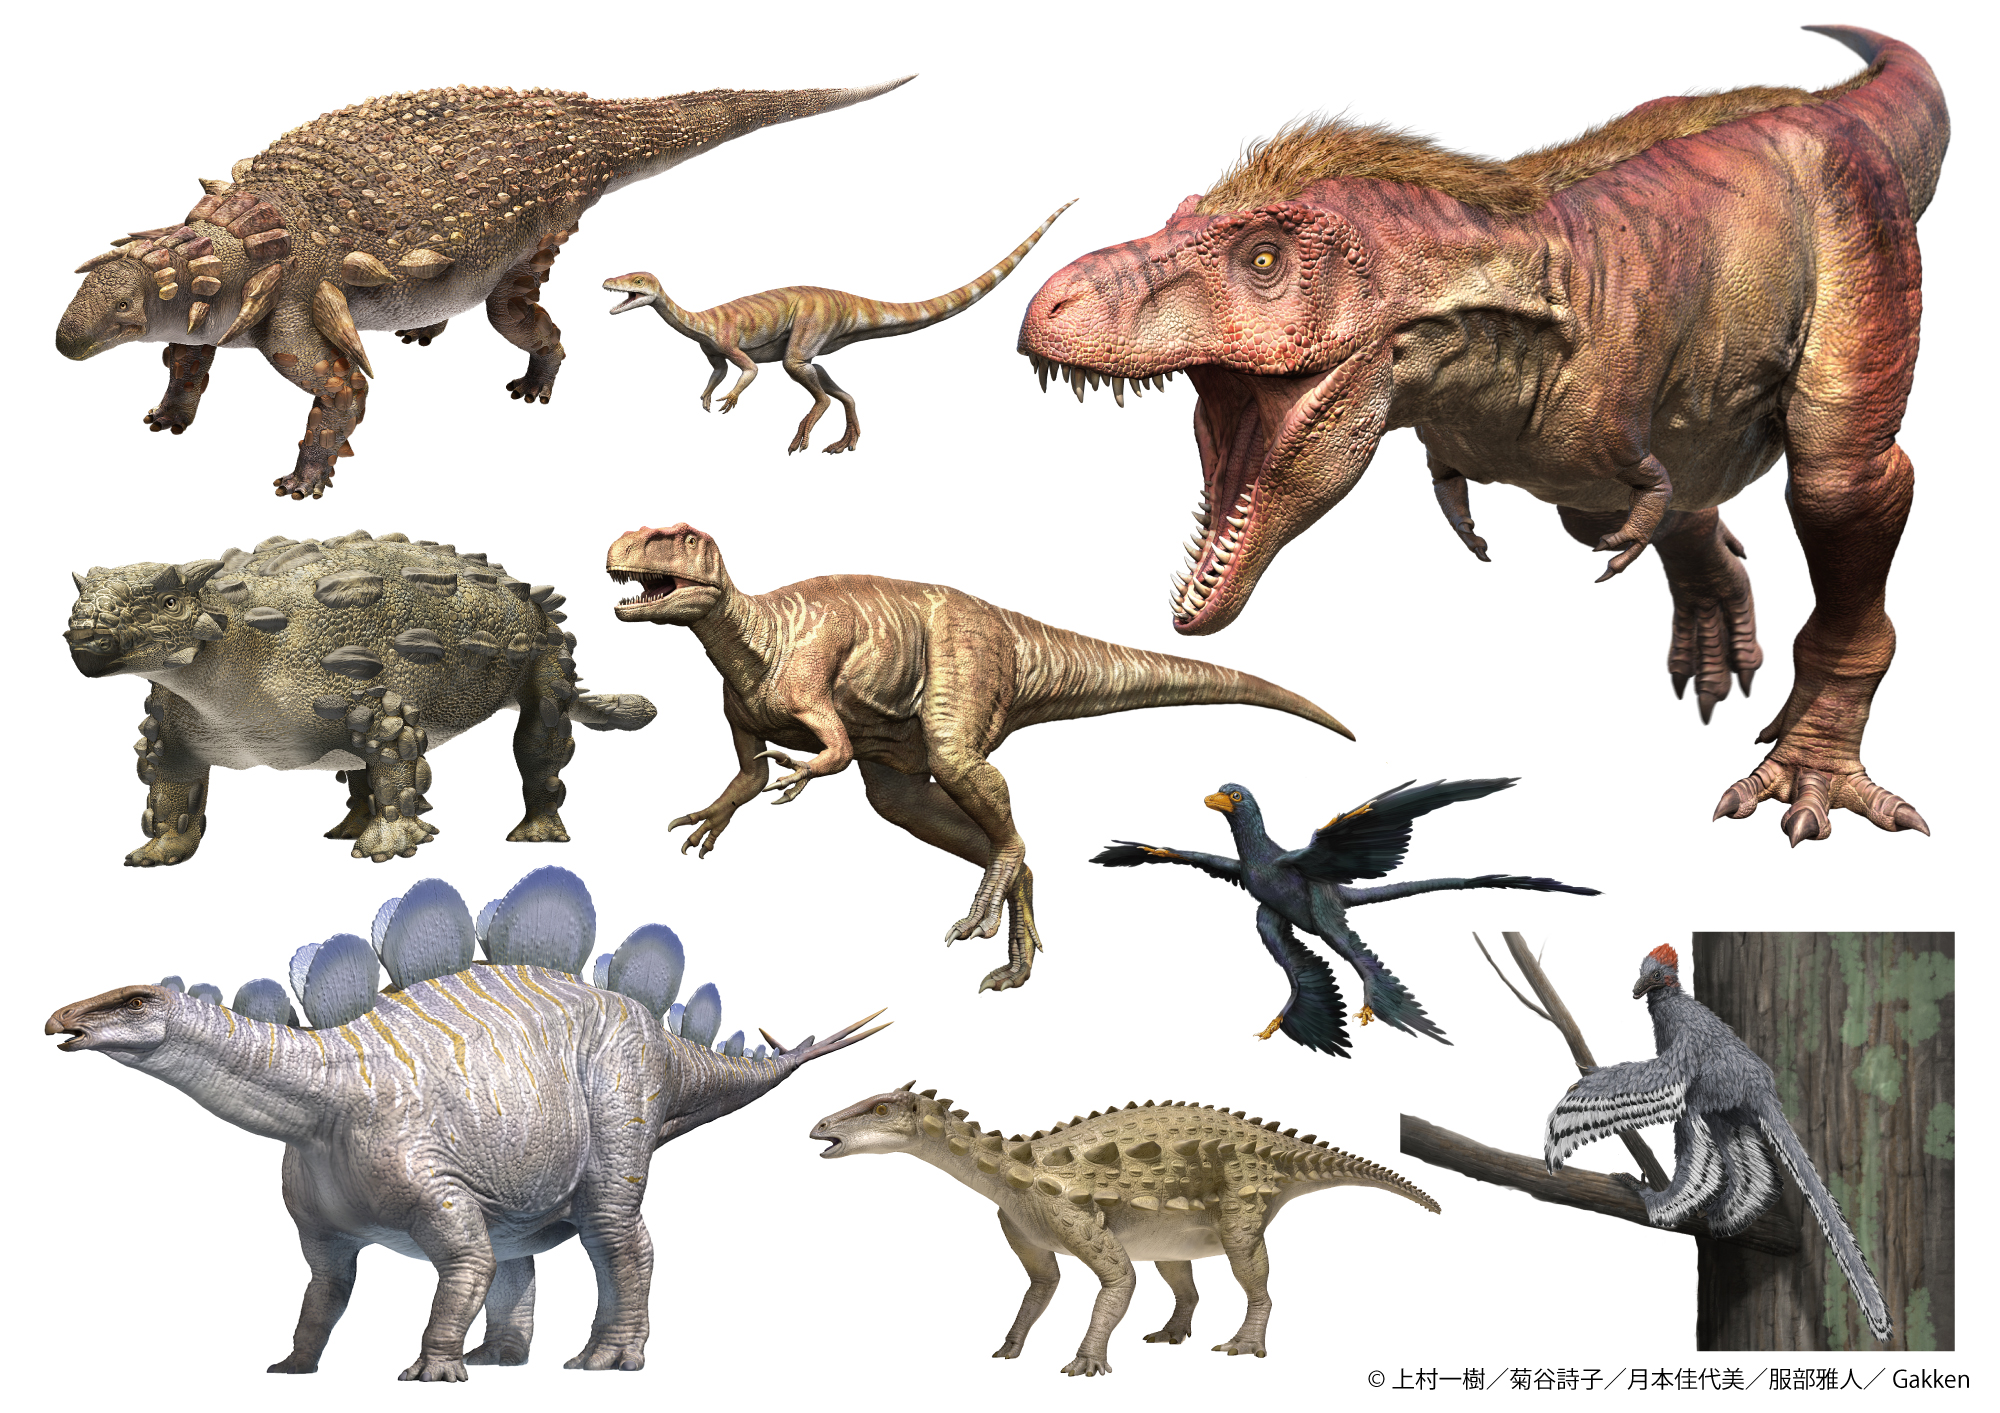 「展示に登場する『学研の図鑑LIVE 恐竜新版』の復元画の抜粋」画像